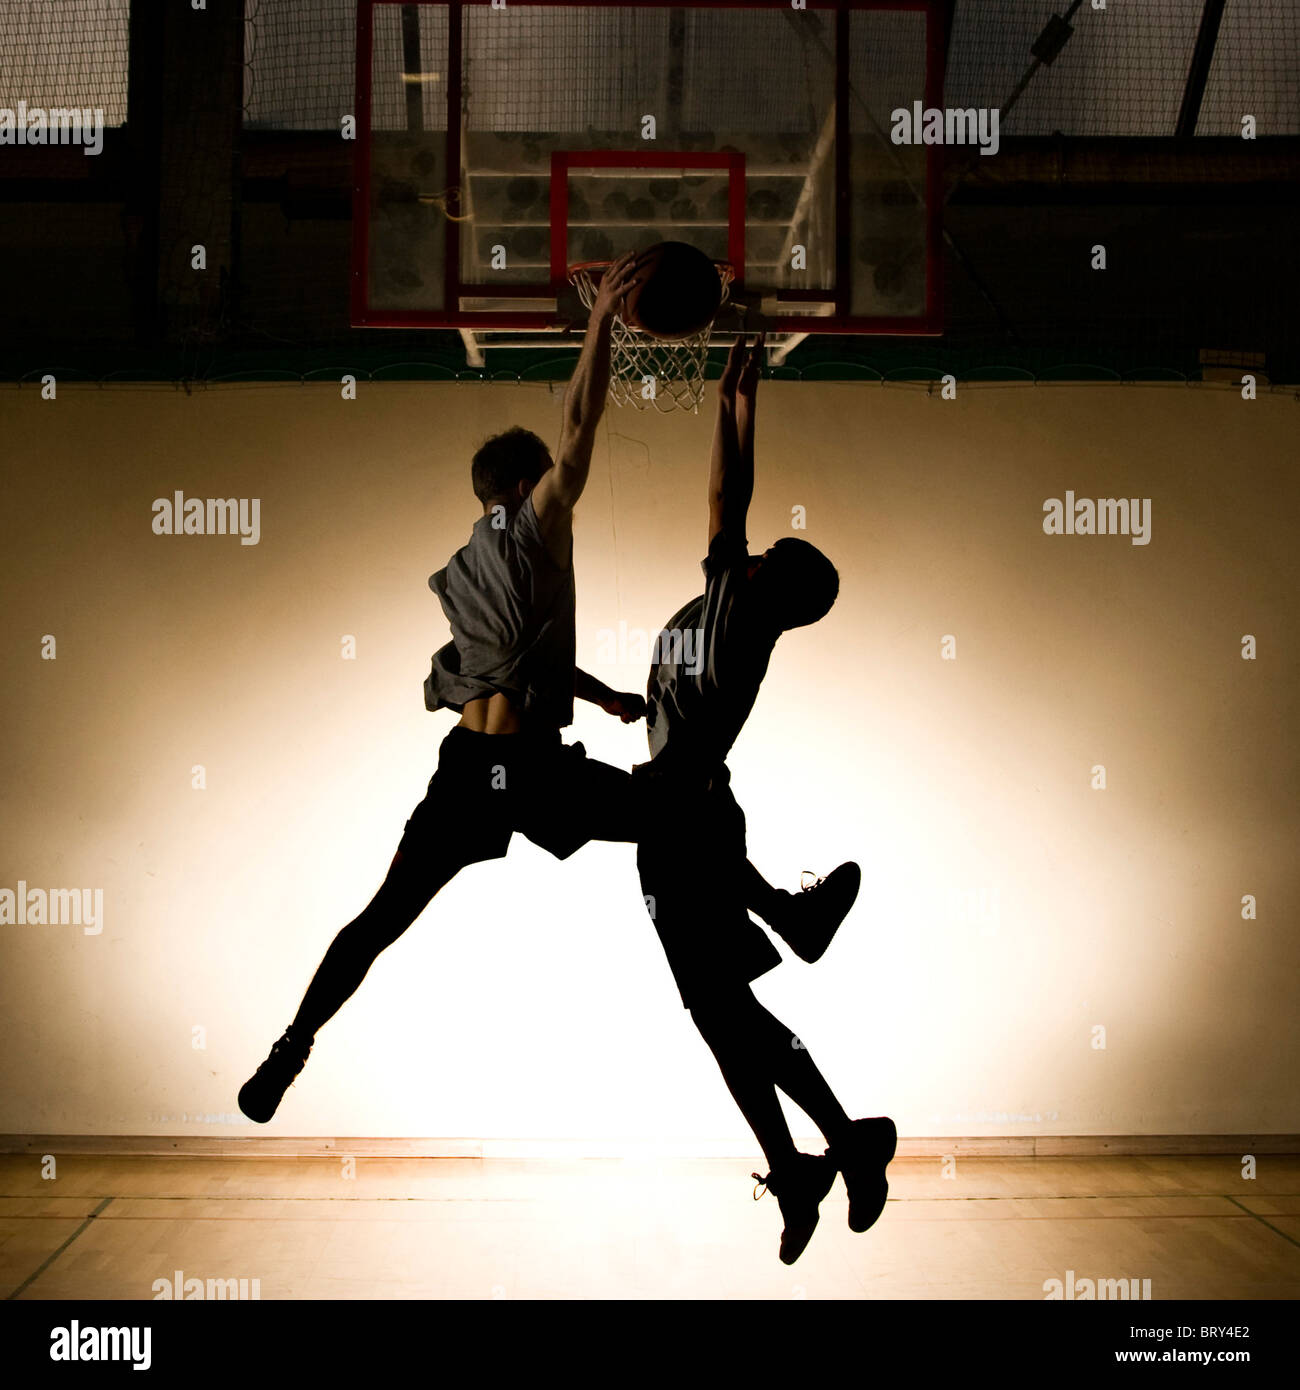 Basket-ball jump - silhouette noire Banque D'Images